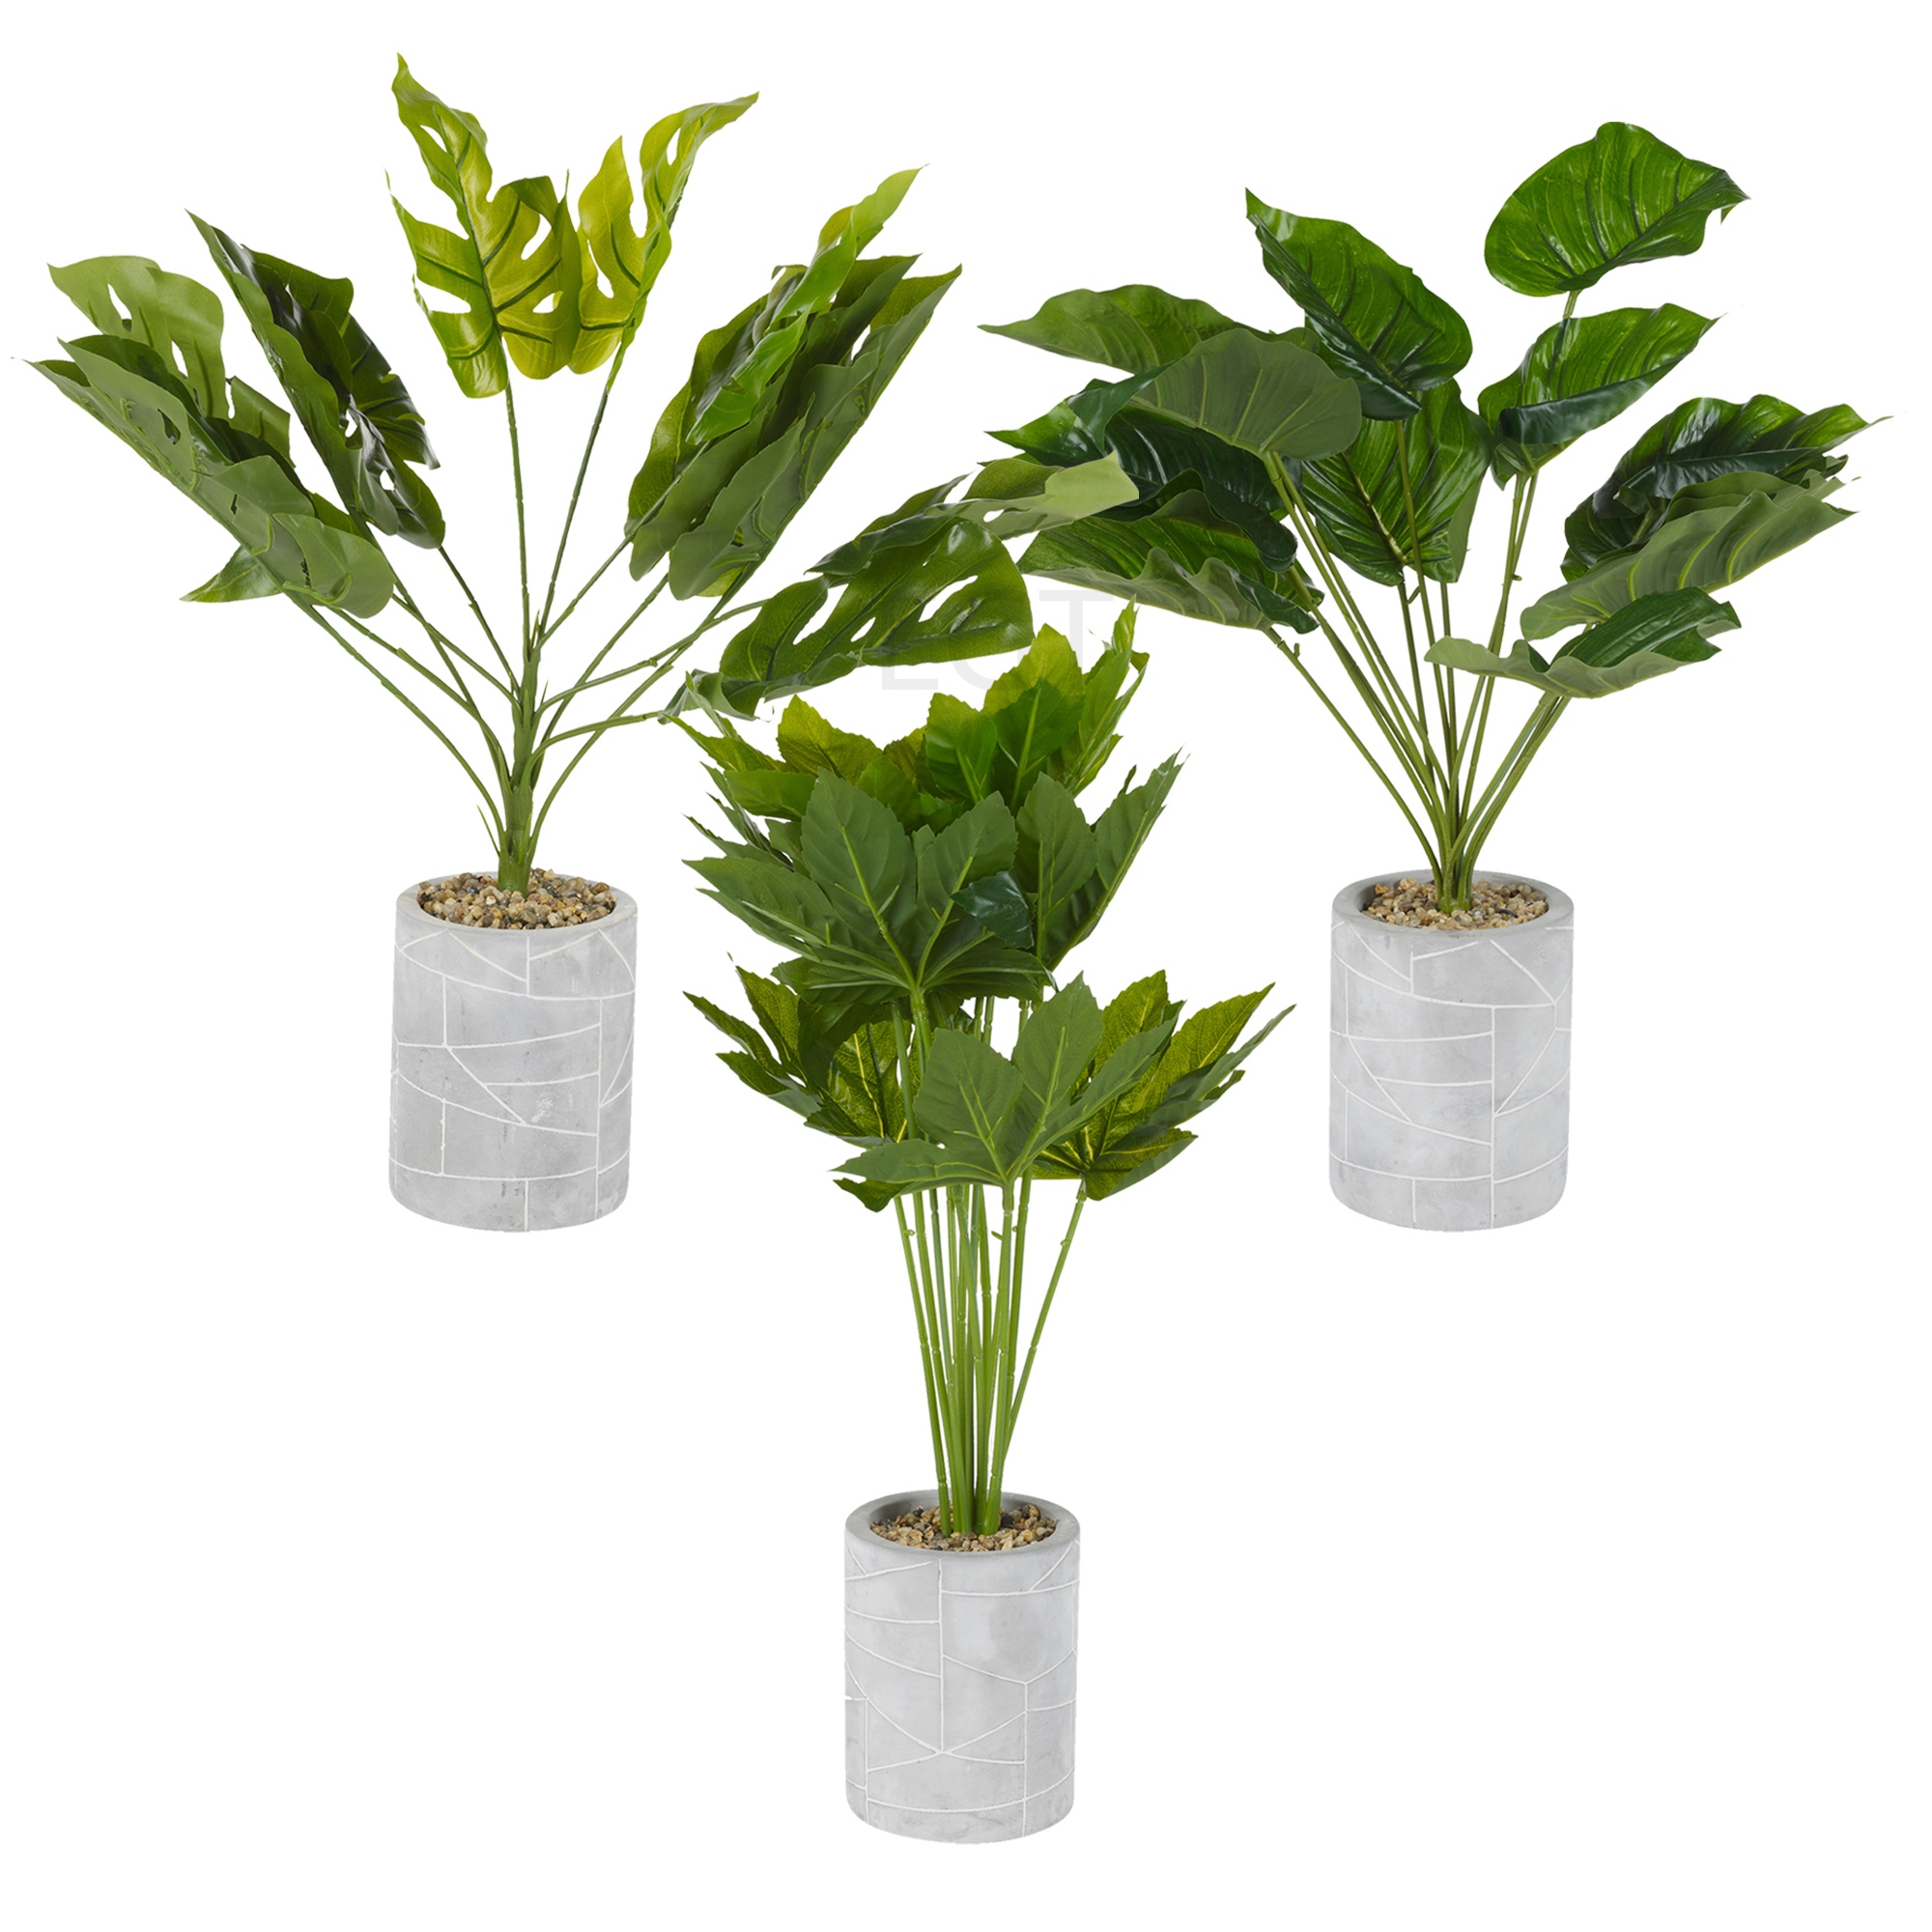 Artificielle Plante Verte Arbre Stone Pot Home Office Tropical Décoration Réaliste